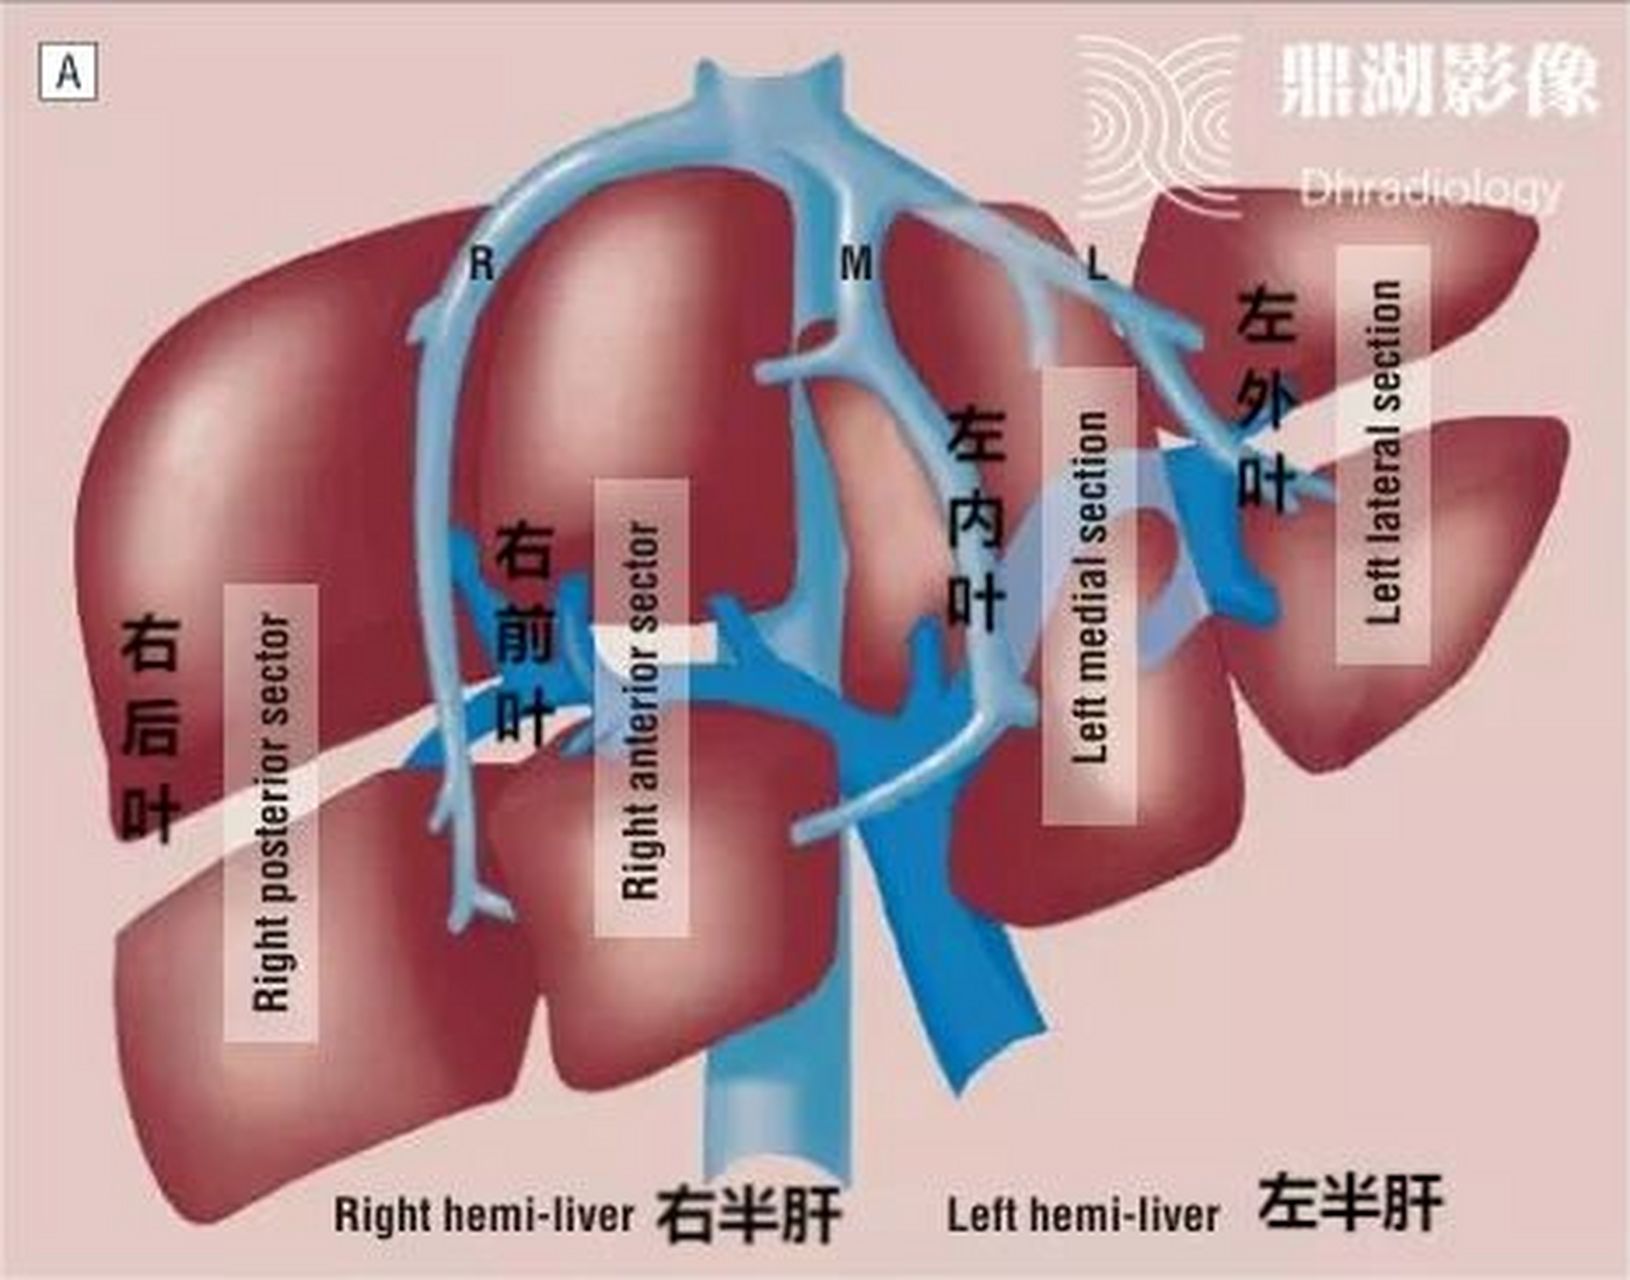 该方法是根据glisson系统的分布和肝静脉的走行将肝脏分为了5叶,8段,5